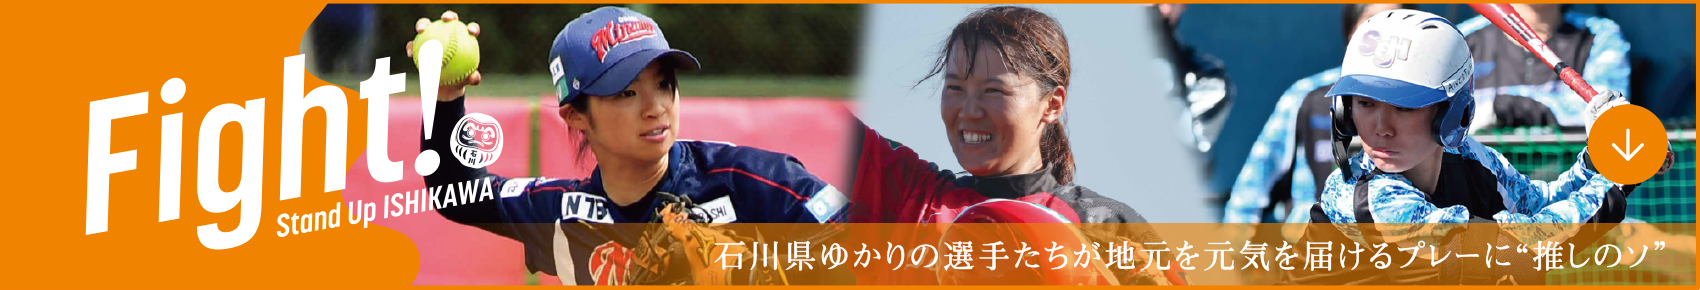 Fight! 石川県ゆかりの選手たちが地元を元気を届けるプレーに”推しのソ”